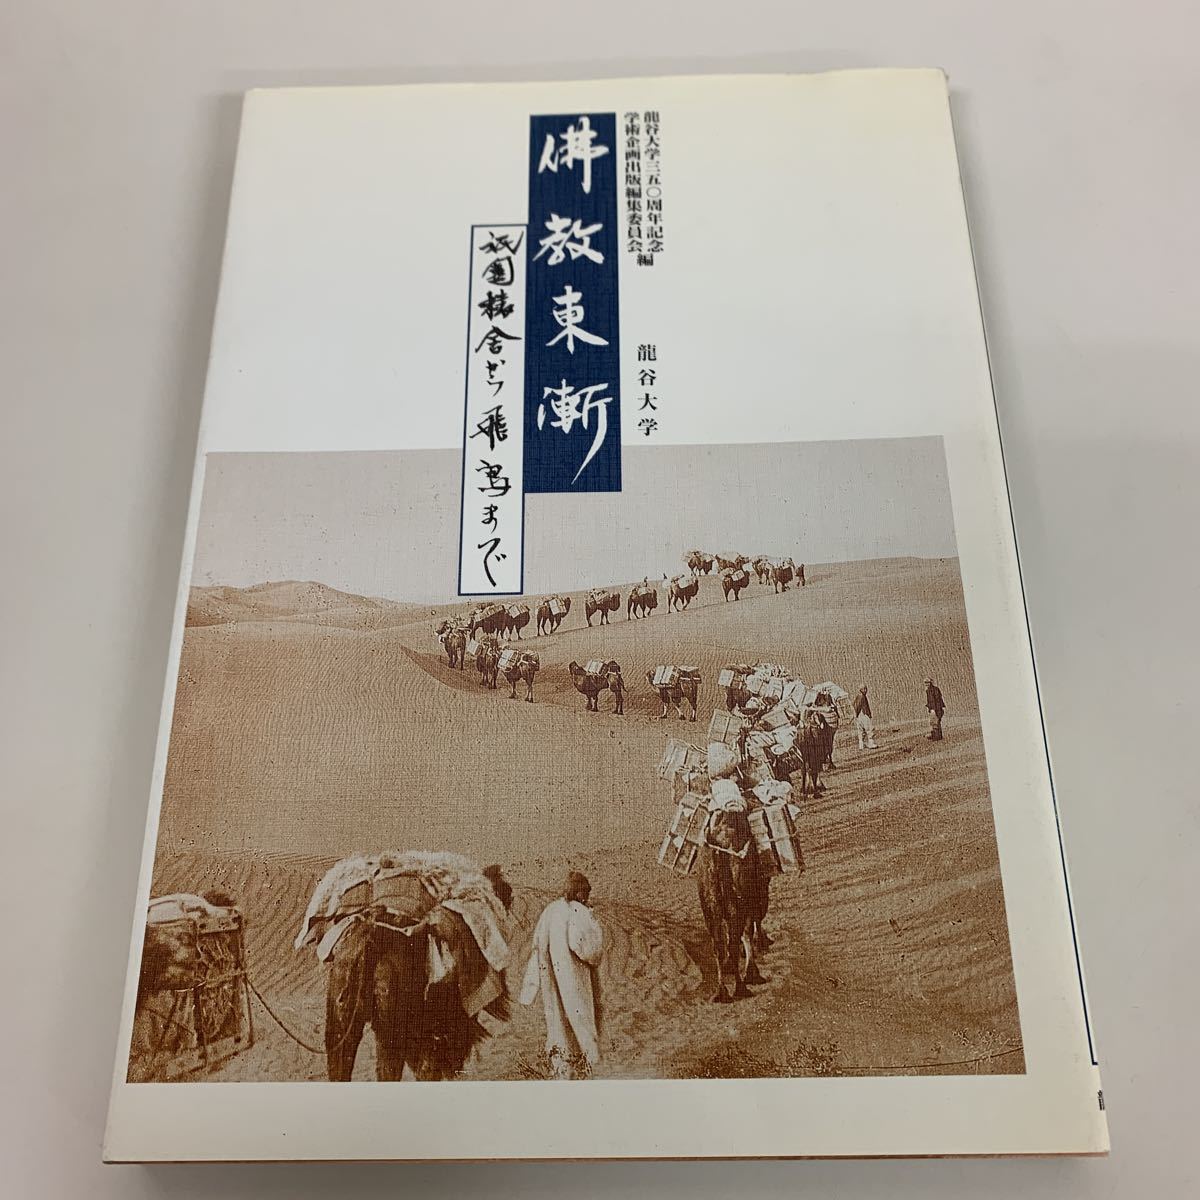 Bouddhisme oriental Université Ryukoku, peinture, Livre d'art, Collection d'œuvres, Catalogue illustré